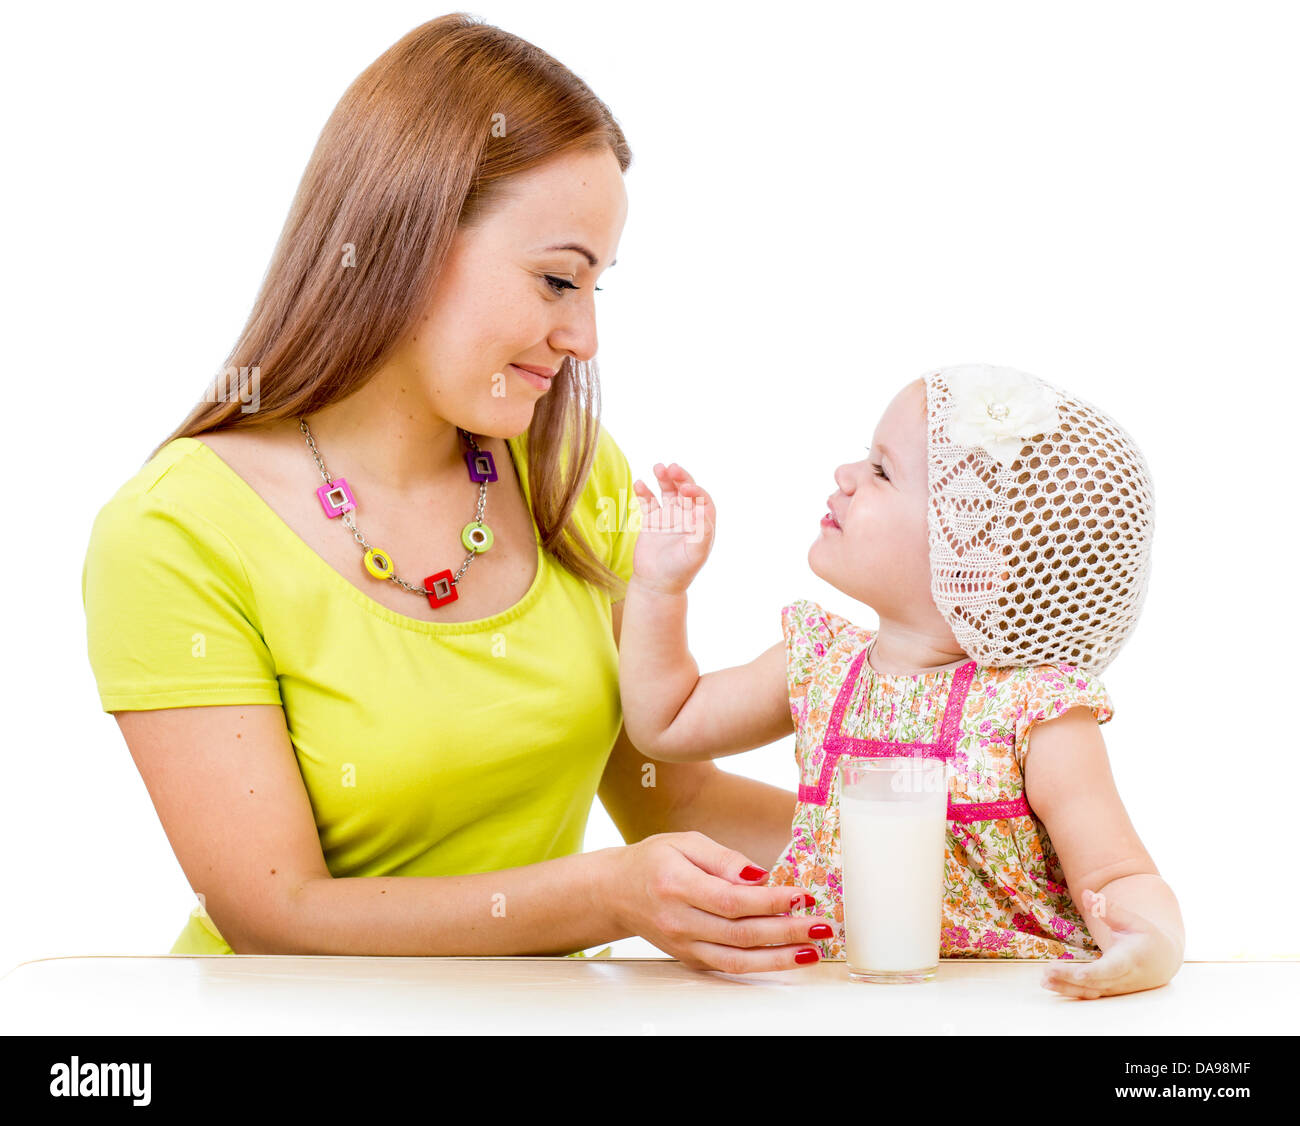 Donner du lait de mère en verre little girl sitting at table isolated on white Banque D'Images